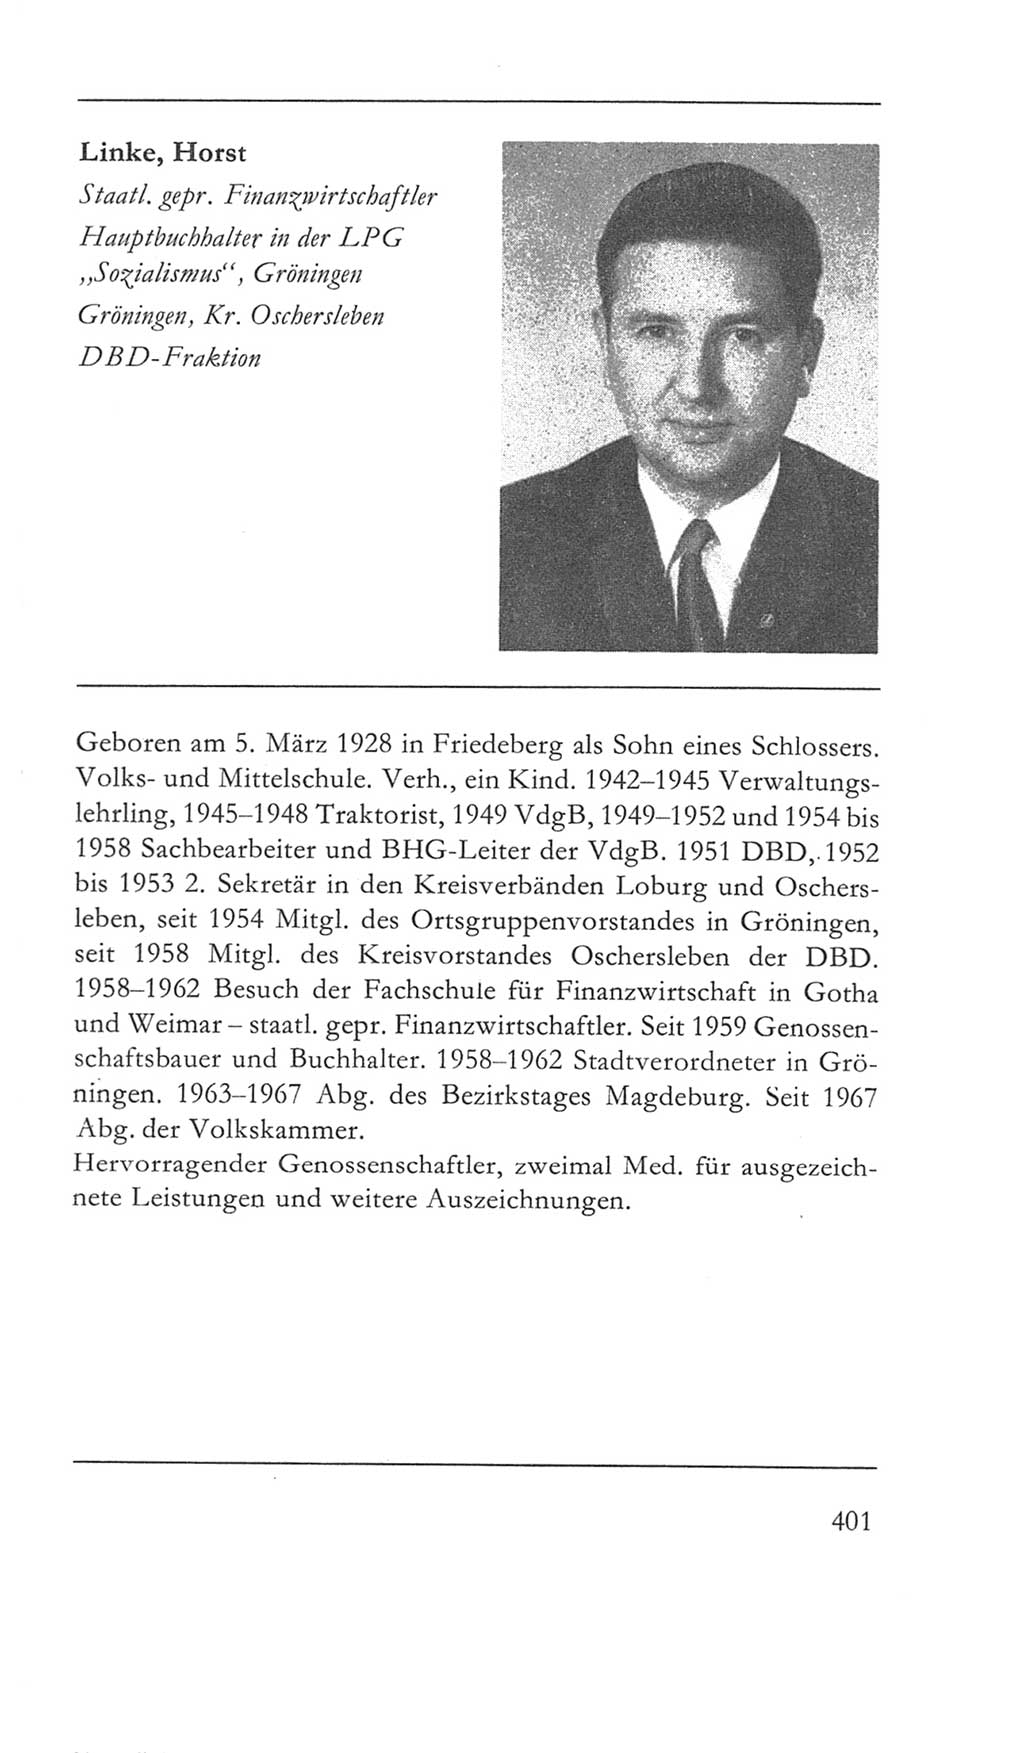 Volkskammer (VK) der Deutschen Demokratischen Republik (DDR) 5. Wahlperiode 1967-1971, Seite 401 (VK. DDR 5. WP. 1967-1971, S. 401)